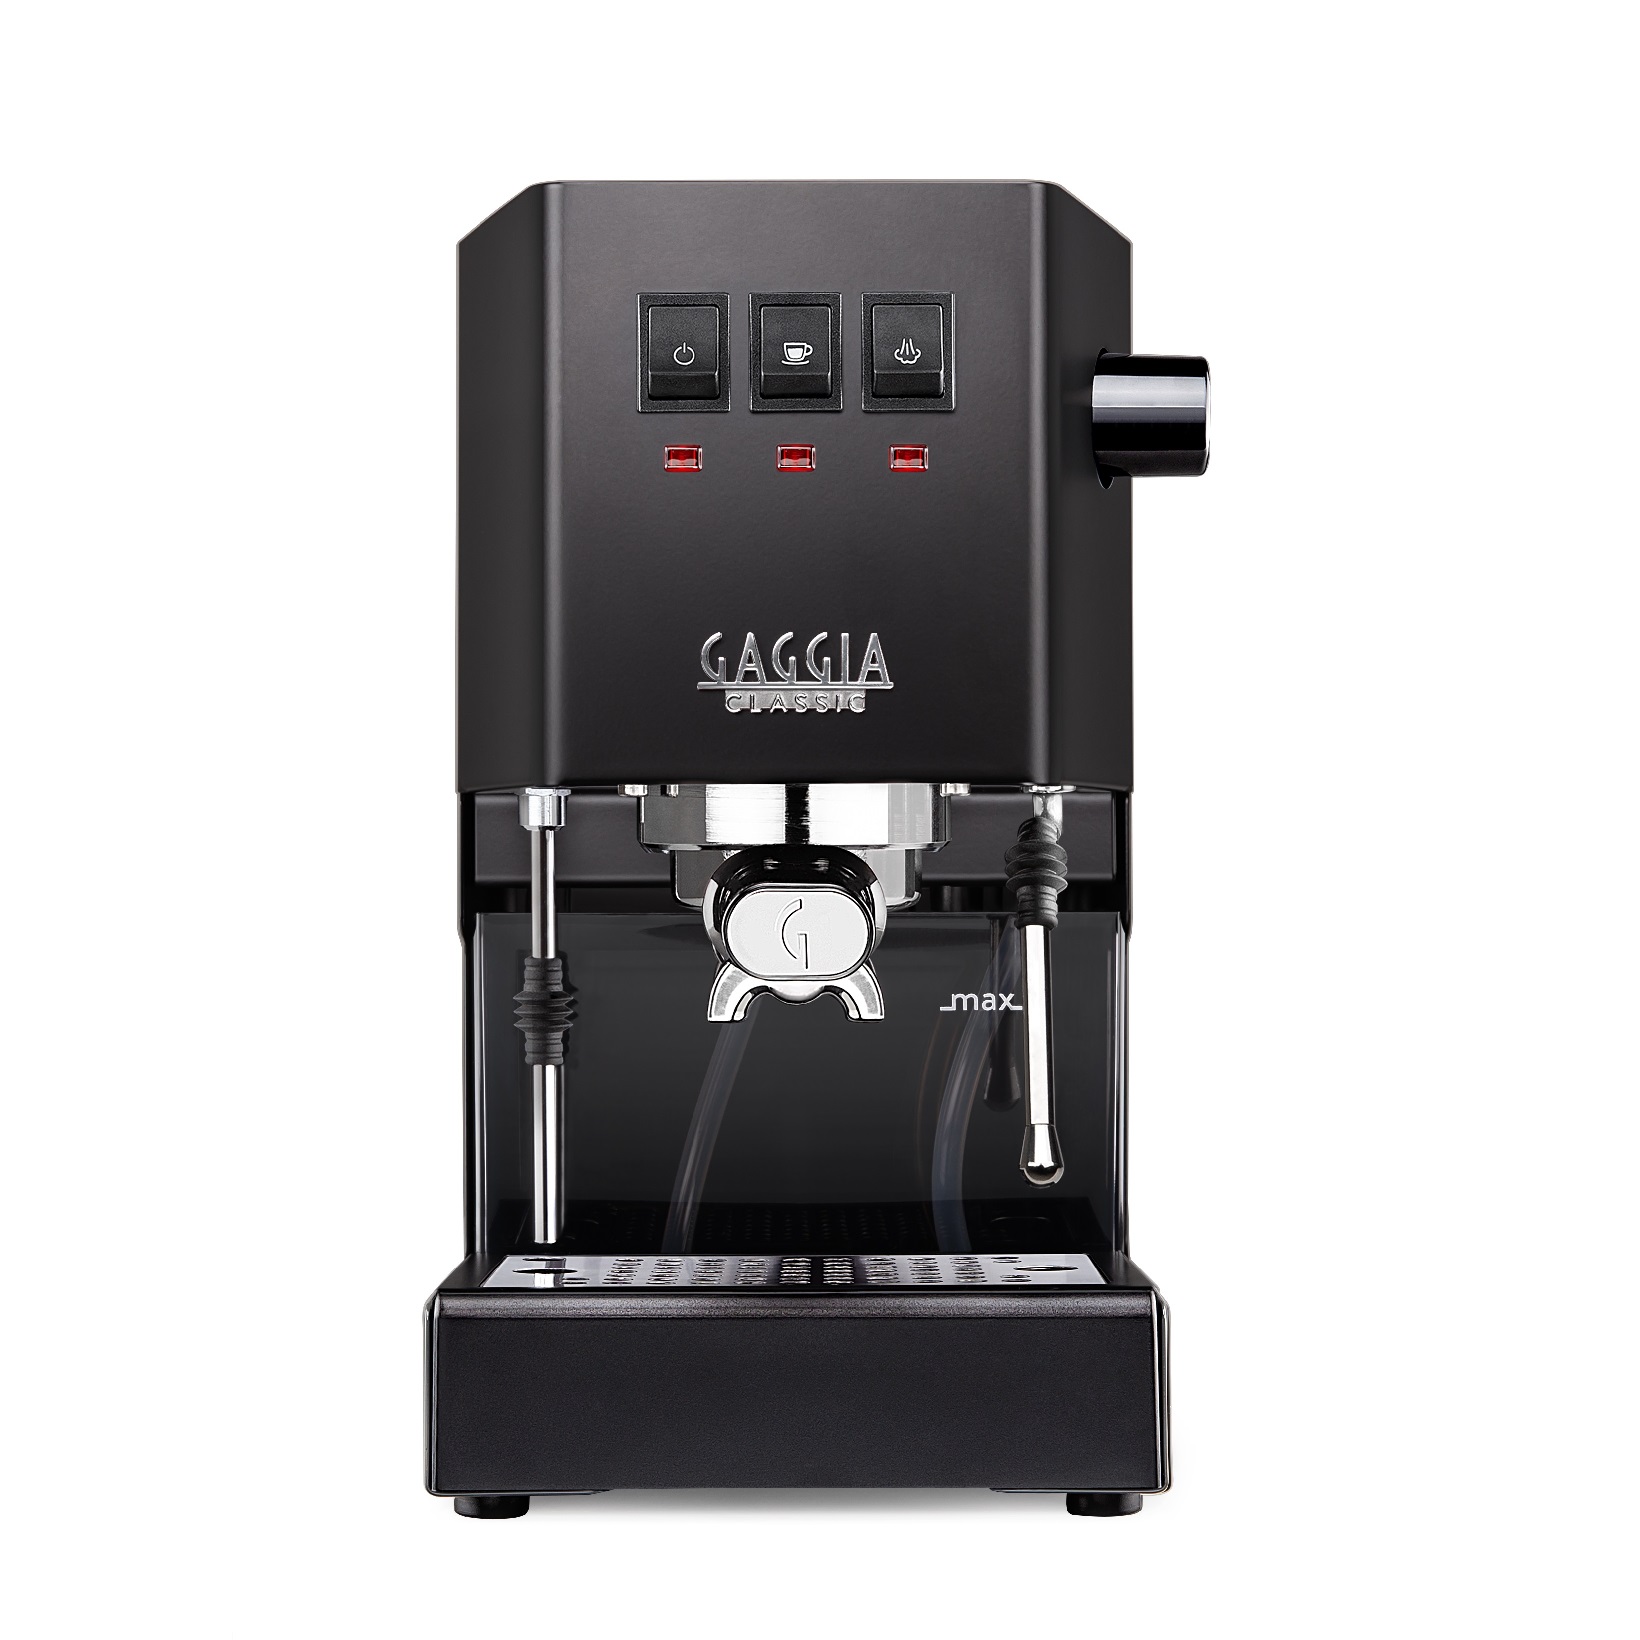 espressor manual gaggia classic 2019 negru 1050 w 2.1 l 15 bar cadou tamper motta 58 mm Espressor Gaggia Cafea